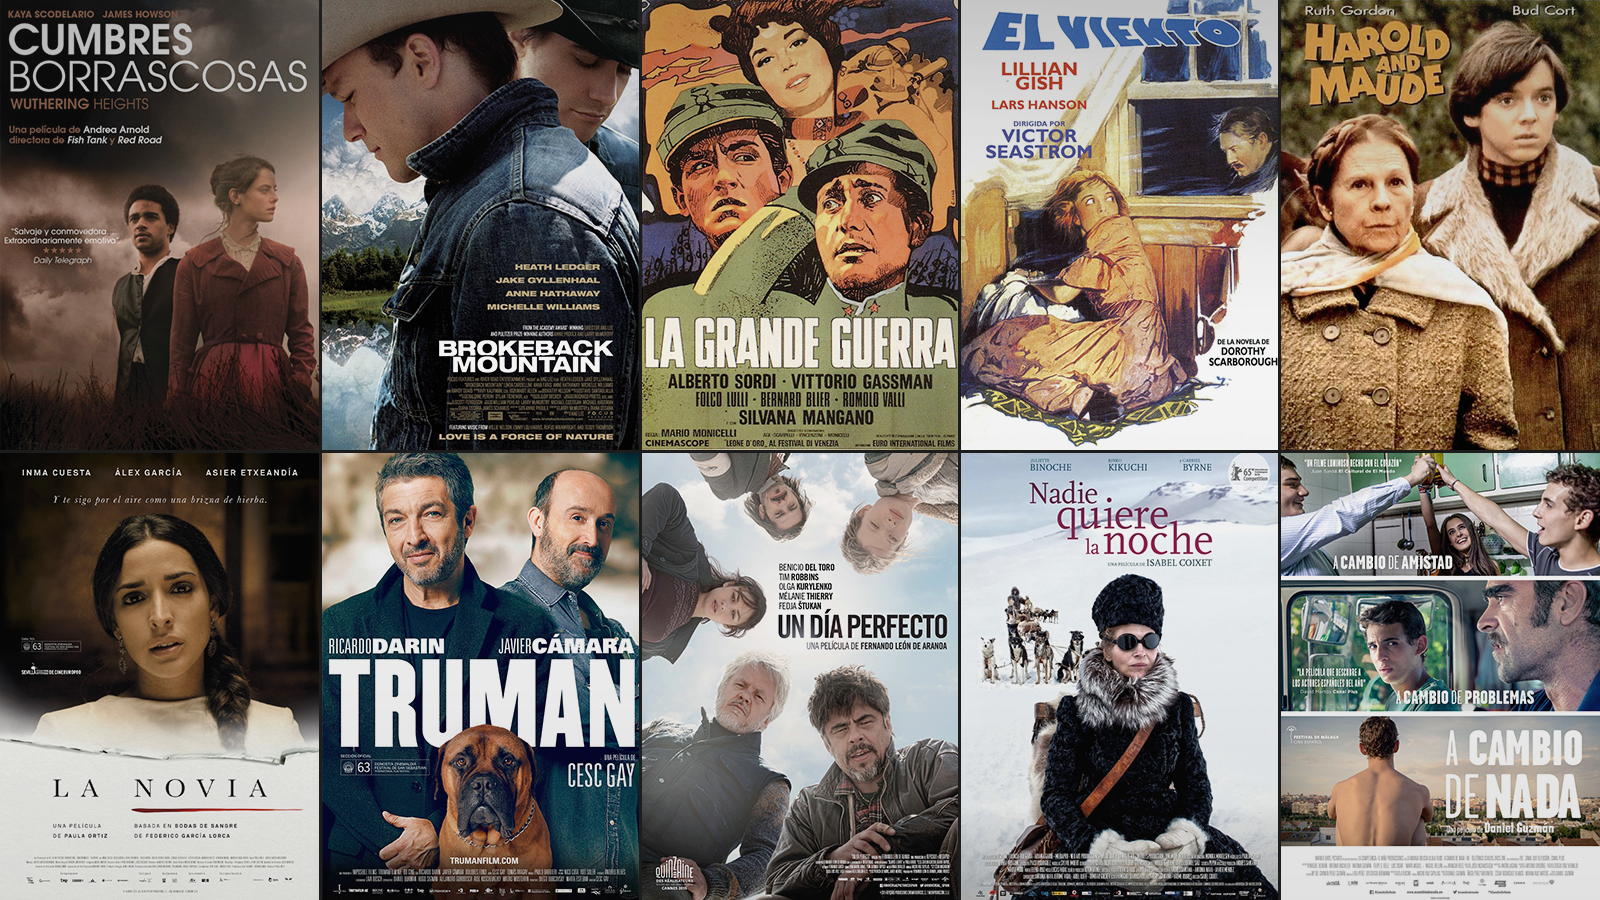 Las películas nominadas al Goya a mejor película y sus referentes.